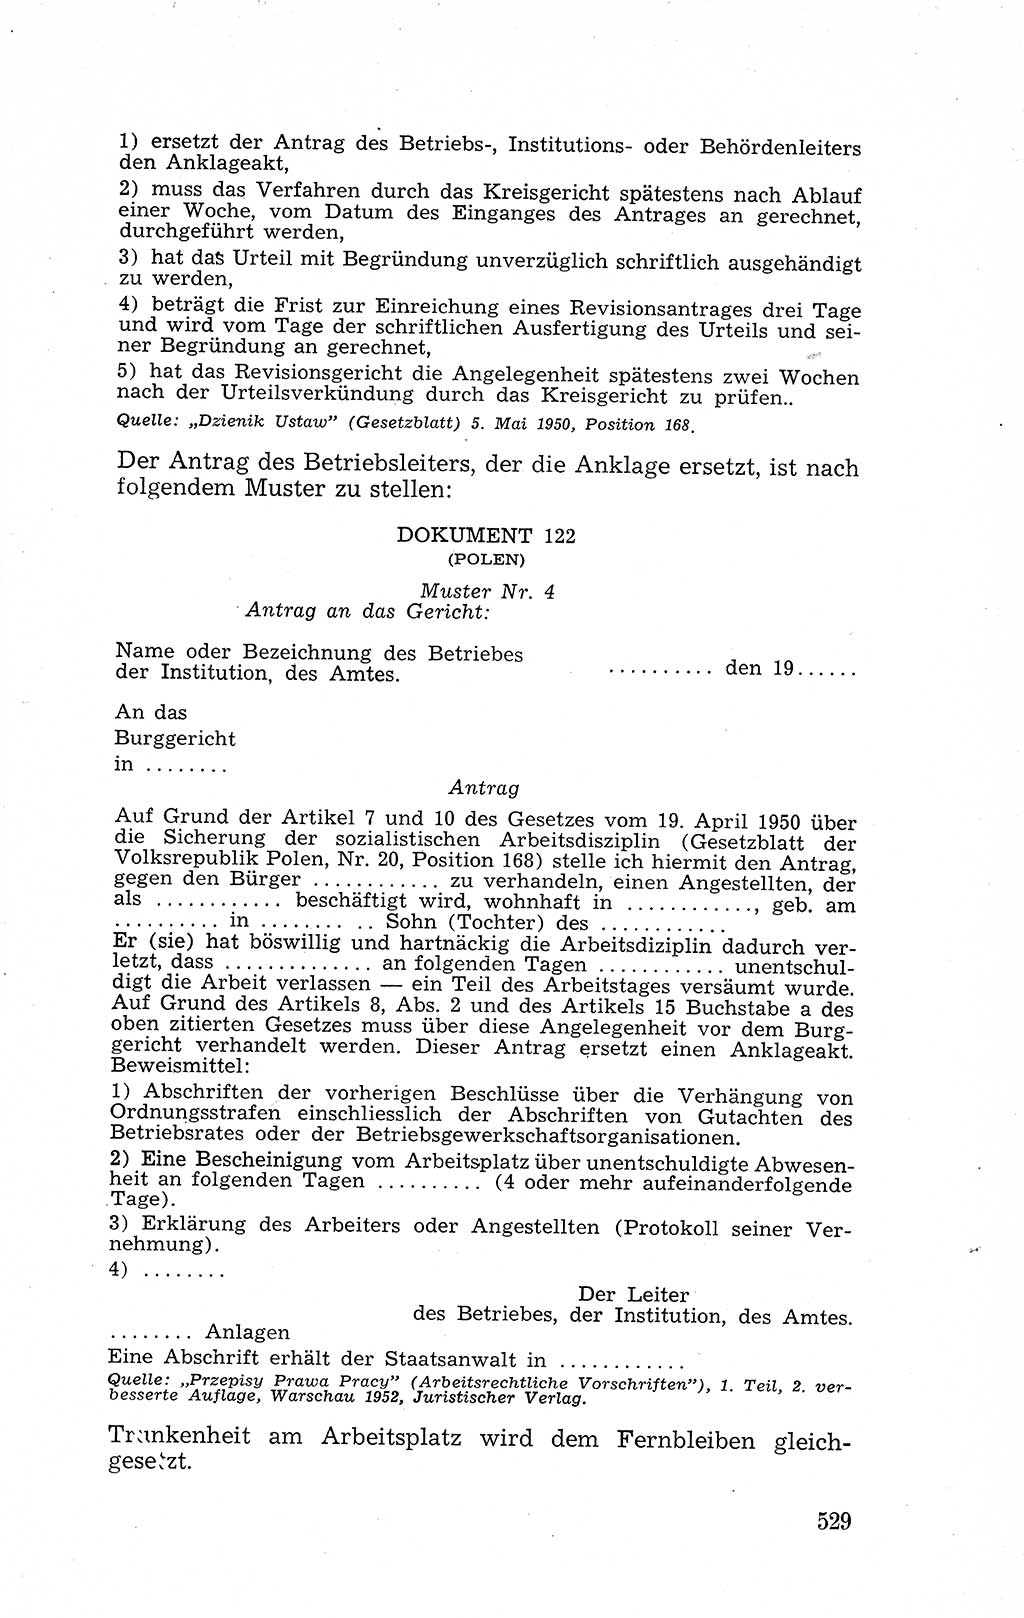 Recht in Fesseln, Dokumente, Internationale Juristen-Kommission [Bundesrepublik Deutschland (BRD)] 1955, Seite 529 (R. Dok. IJK BRD 1955, S. 529)